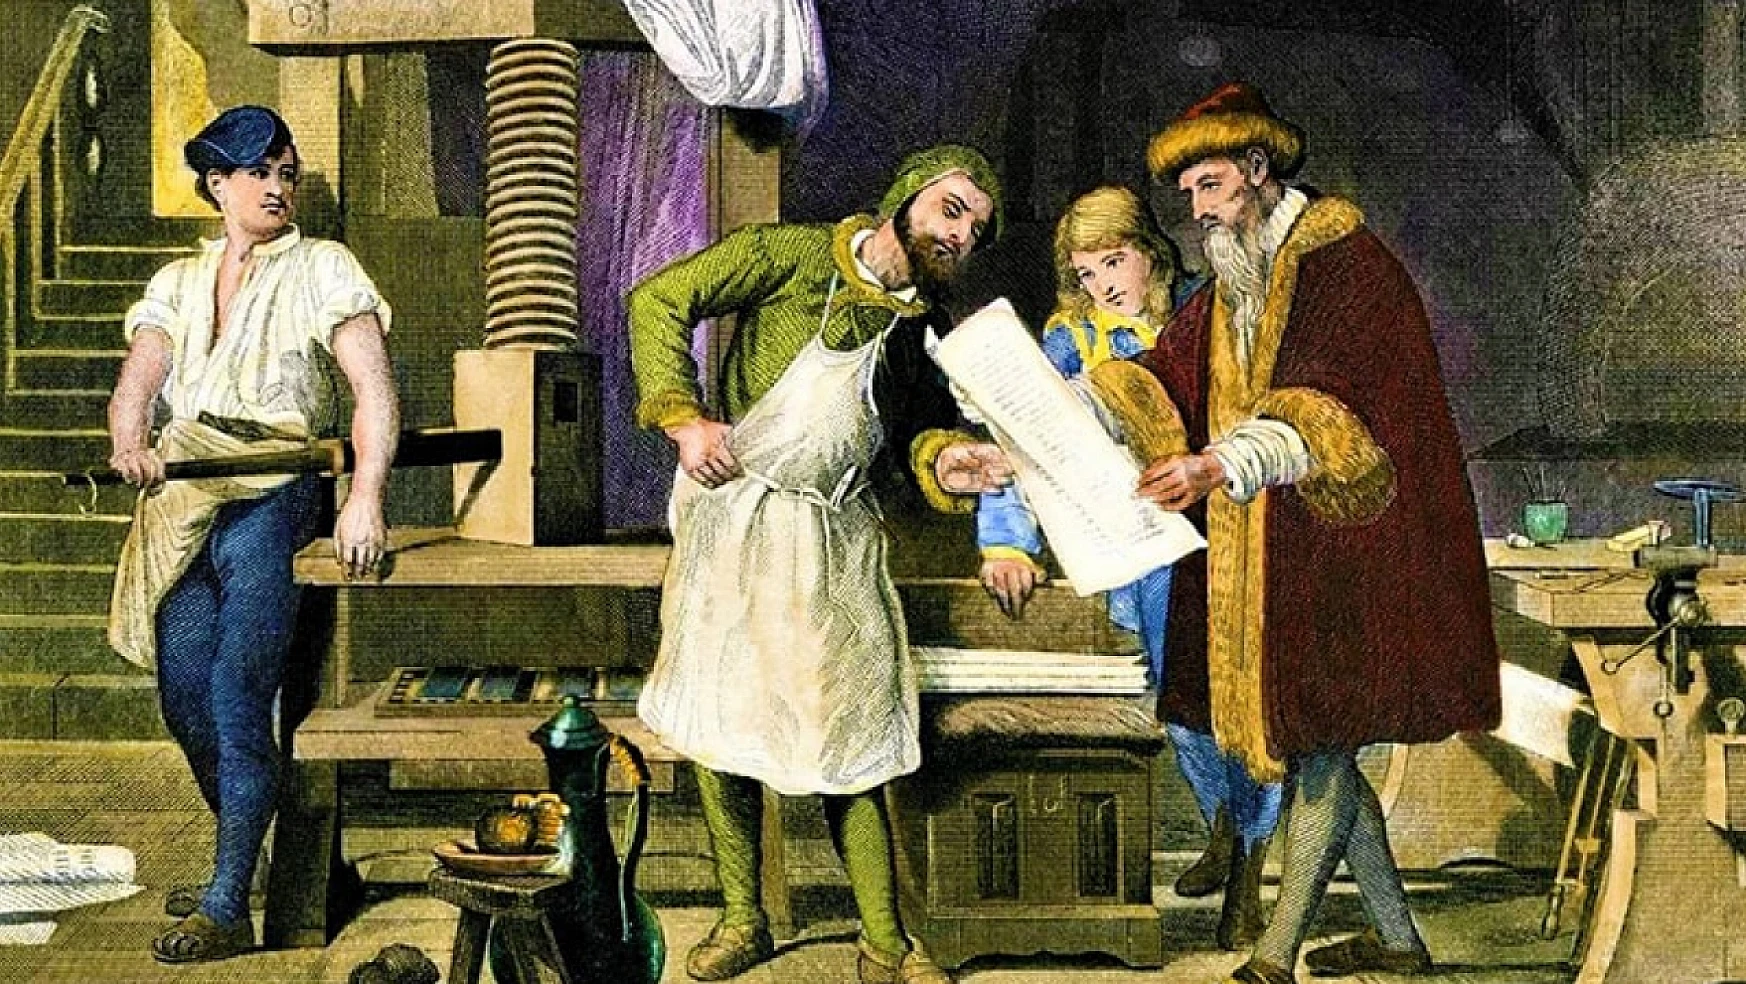 Johannes Gutenberg'in matbaa devrimi: Bilgi çağının başlangıcı